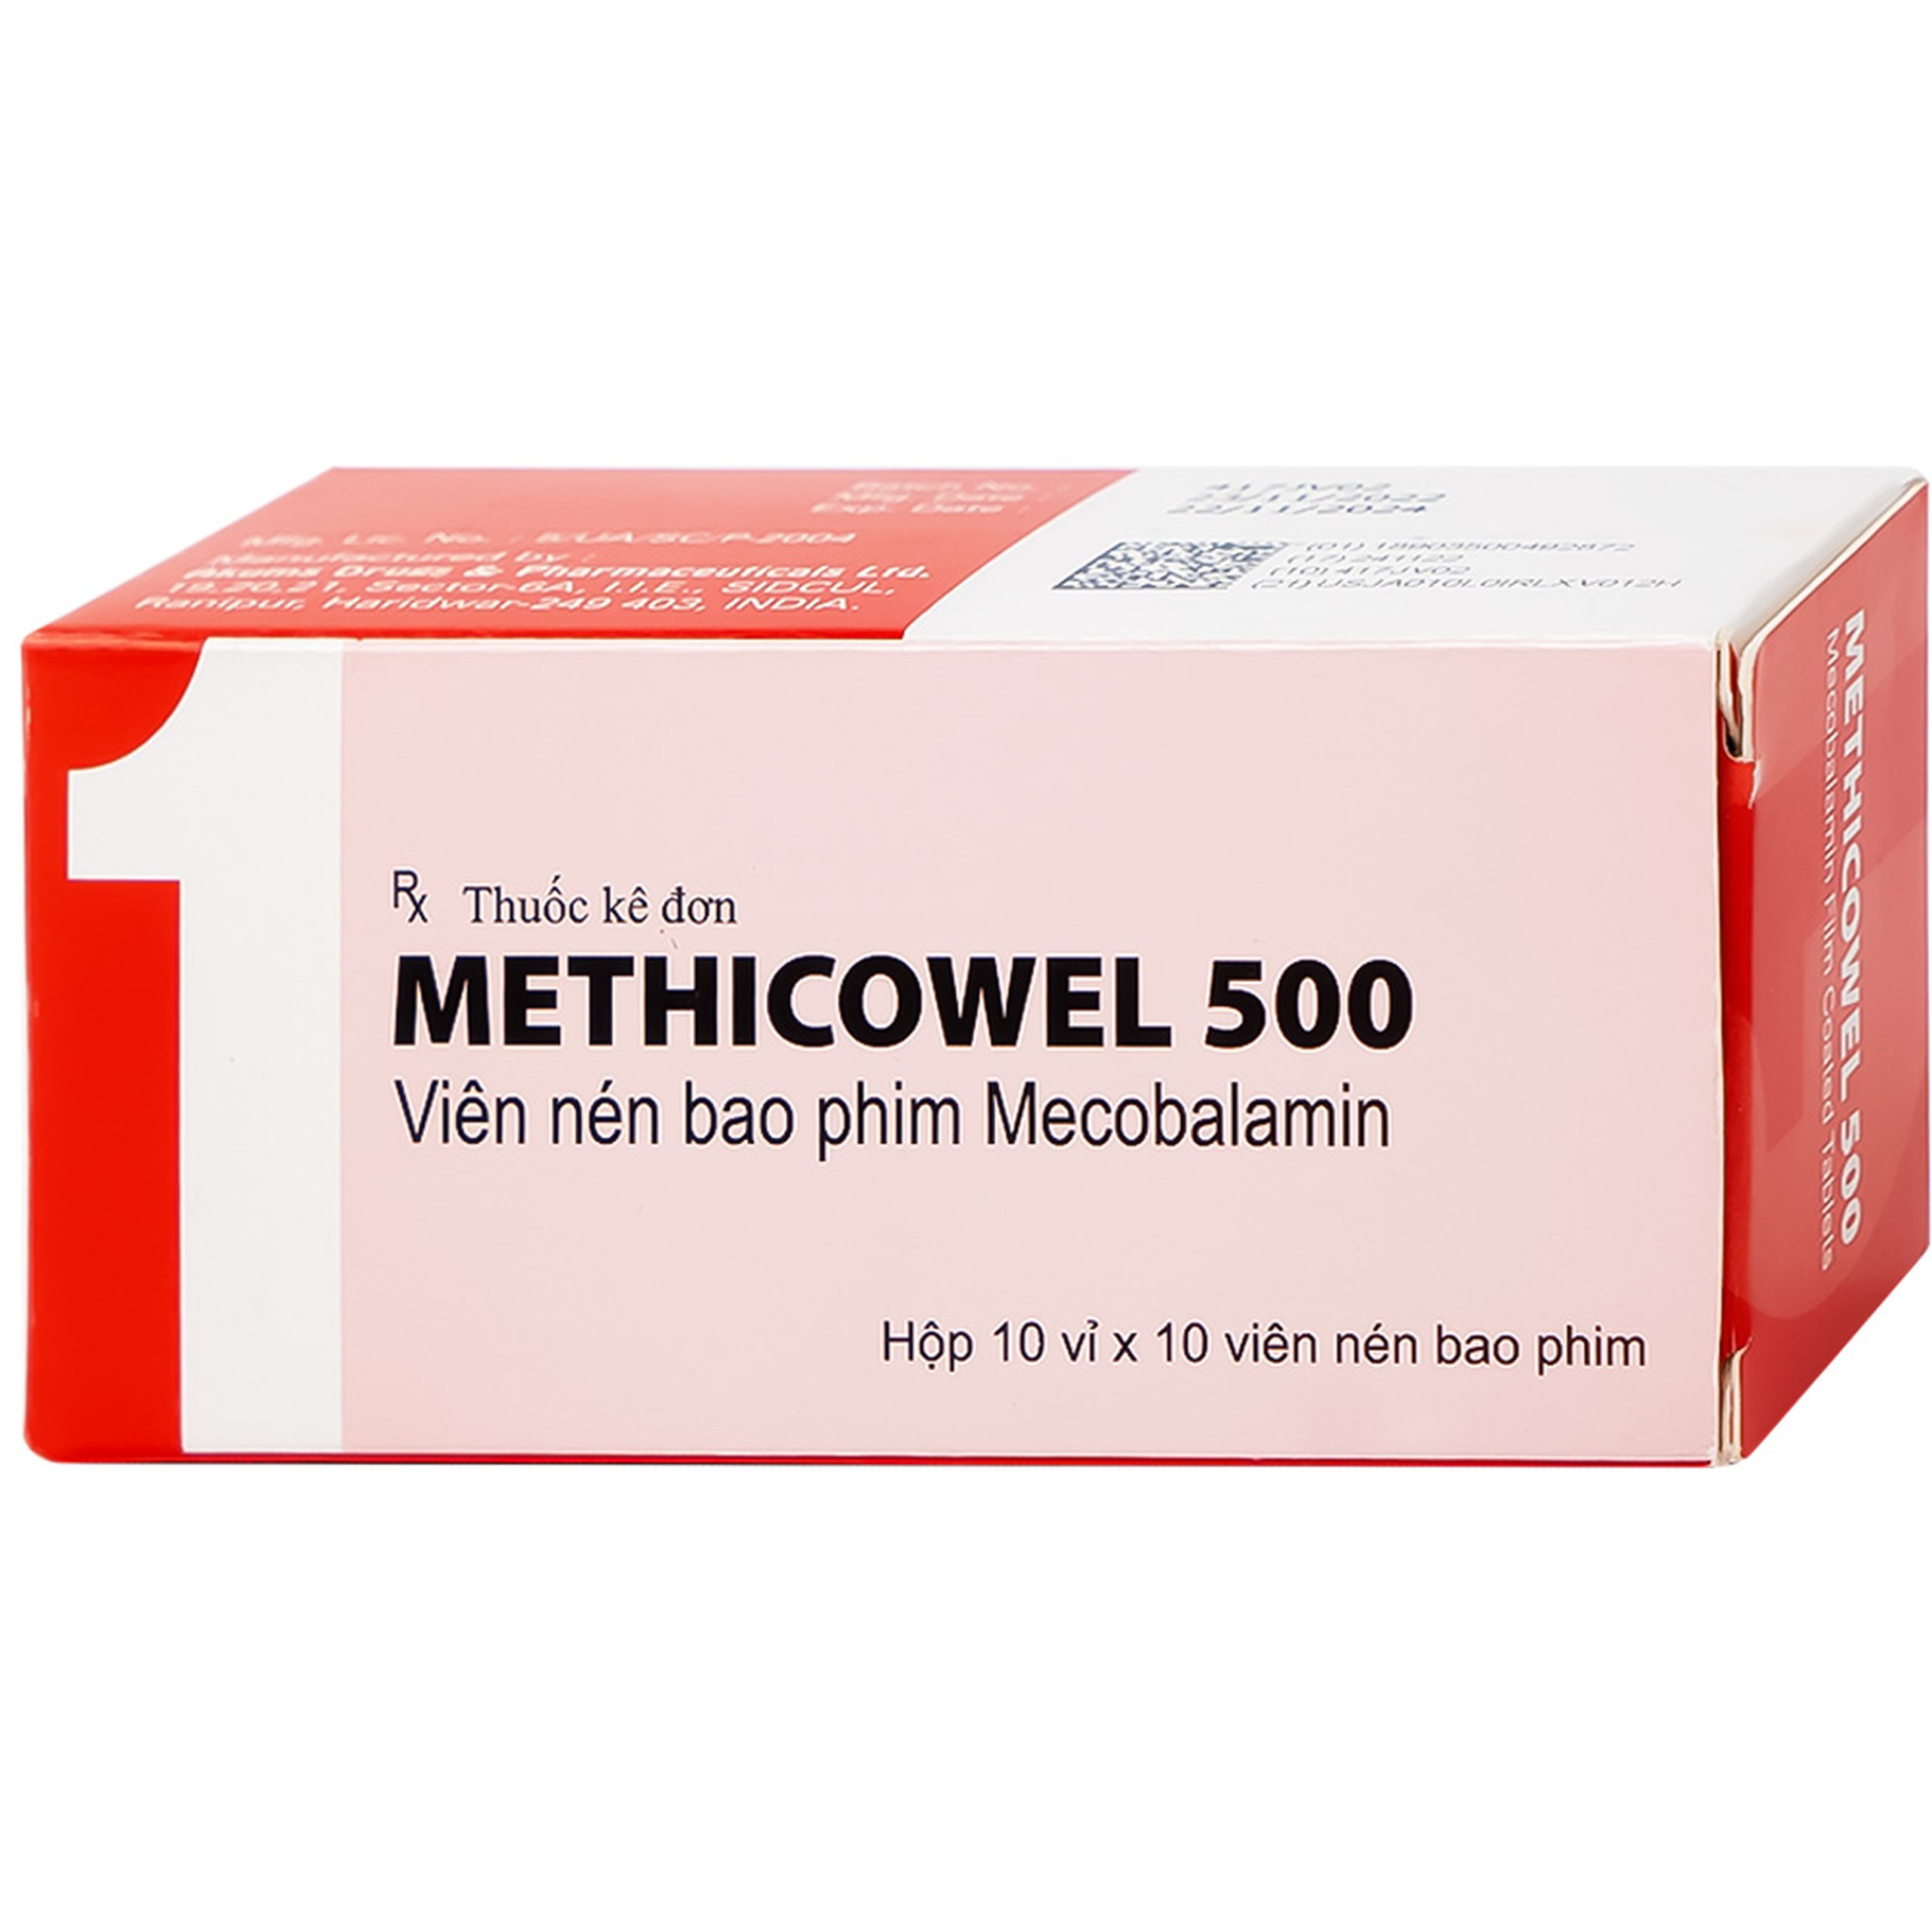 Thuốc Methicowel 500 Akums điều trị các bệnh lý thần kinh ngoại biên, thiếu máu hồng cầu to (10 vỉ x 10 viên)